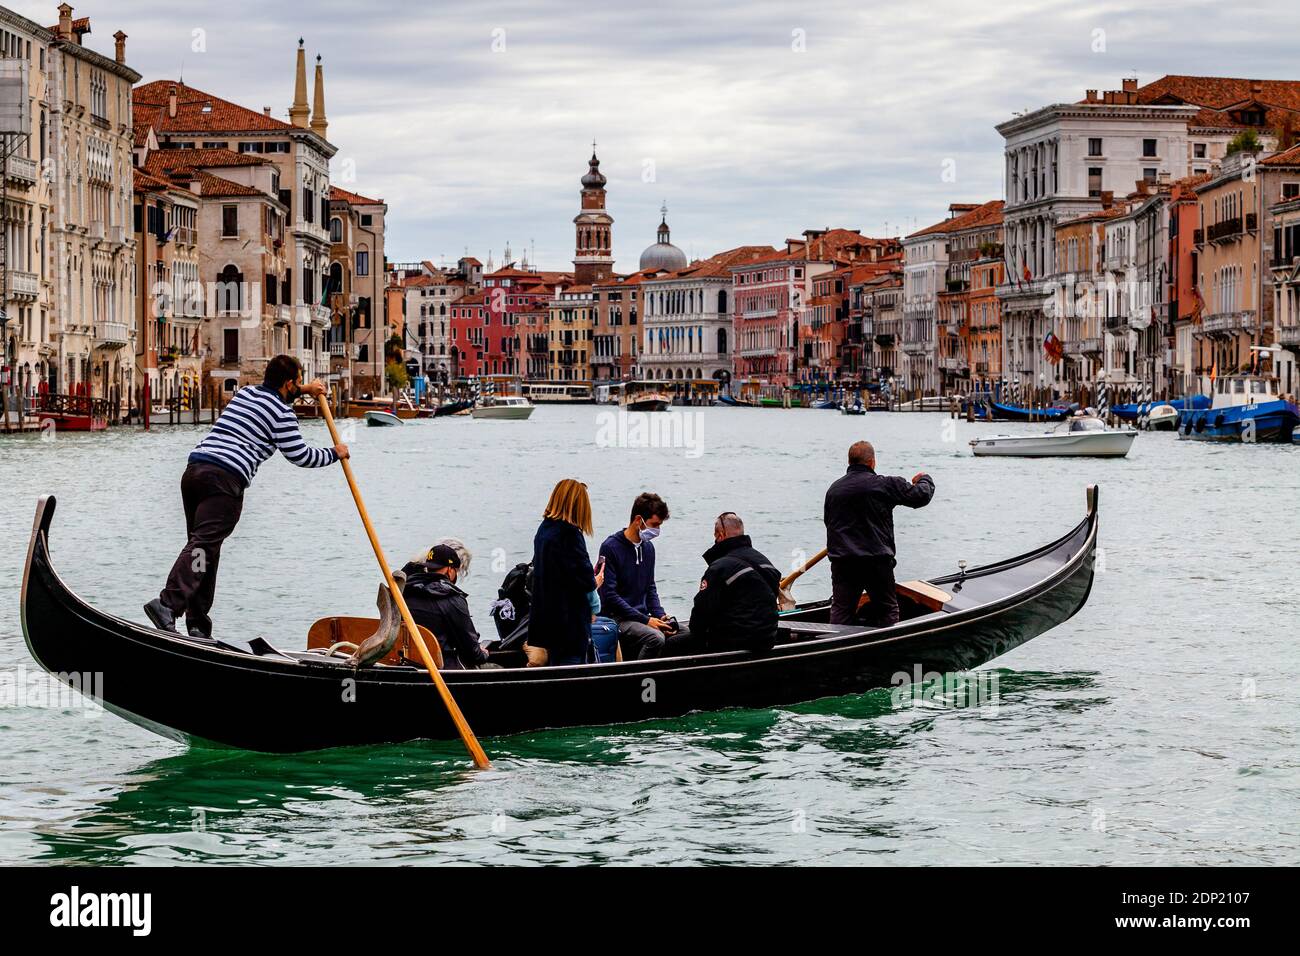 La gente local toma un Traghetto (un bote de góndola usado para transbordar  a los locales a través del Gran Canal), Venecia, Italia Fotografía de stock  - Alamy